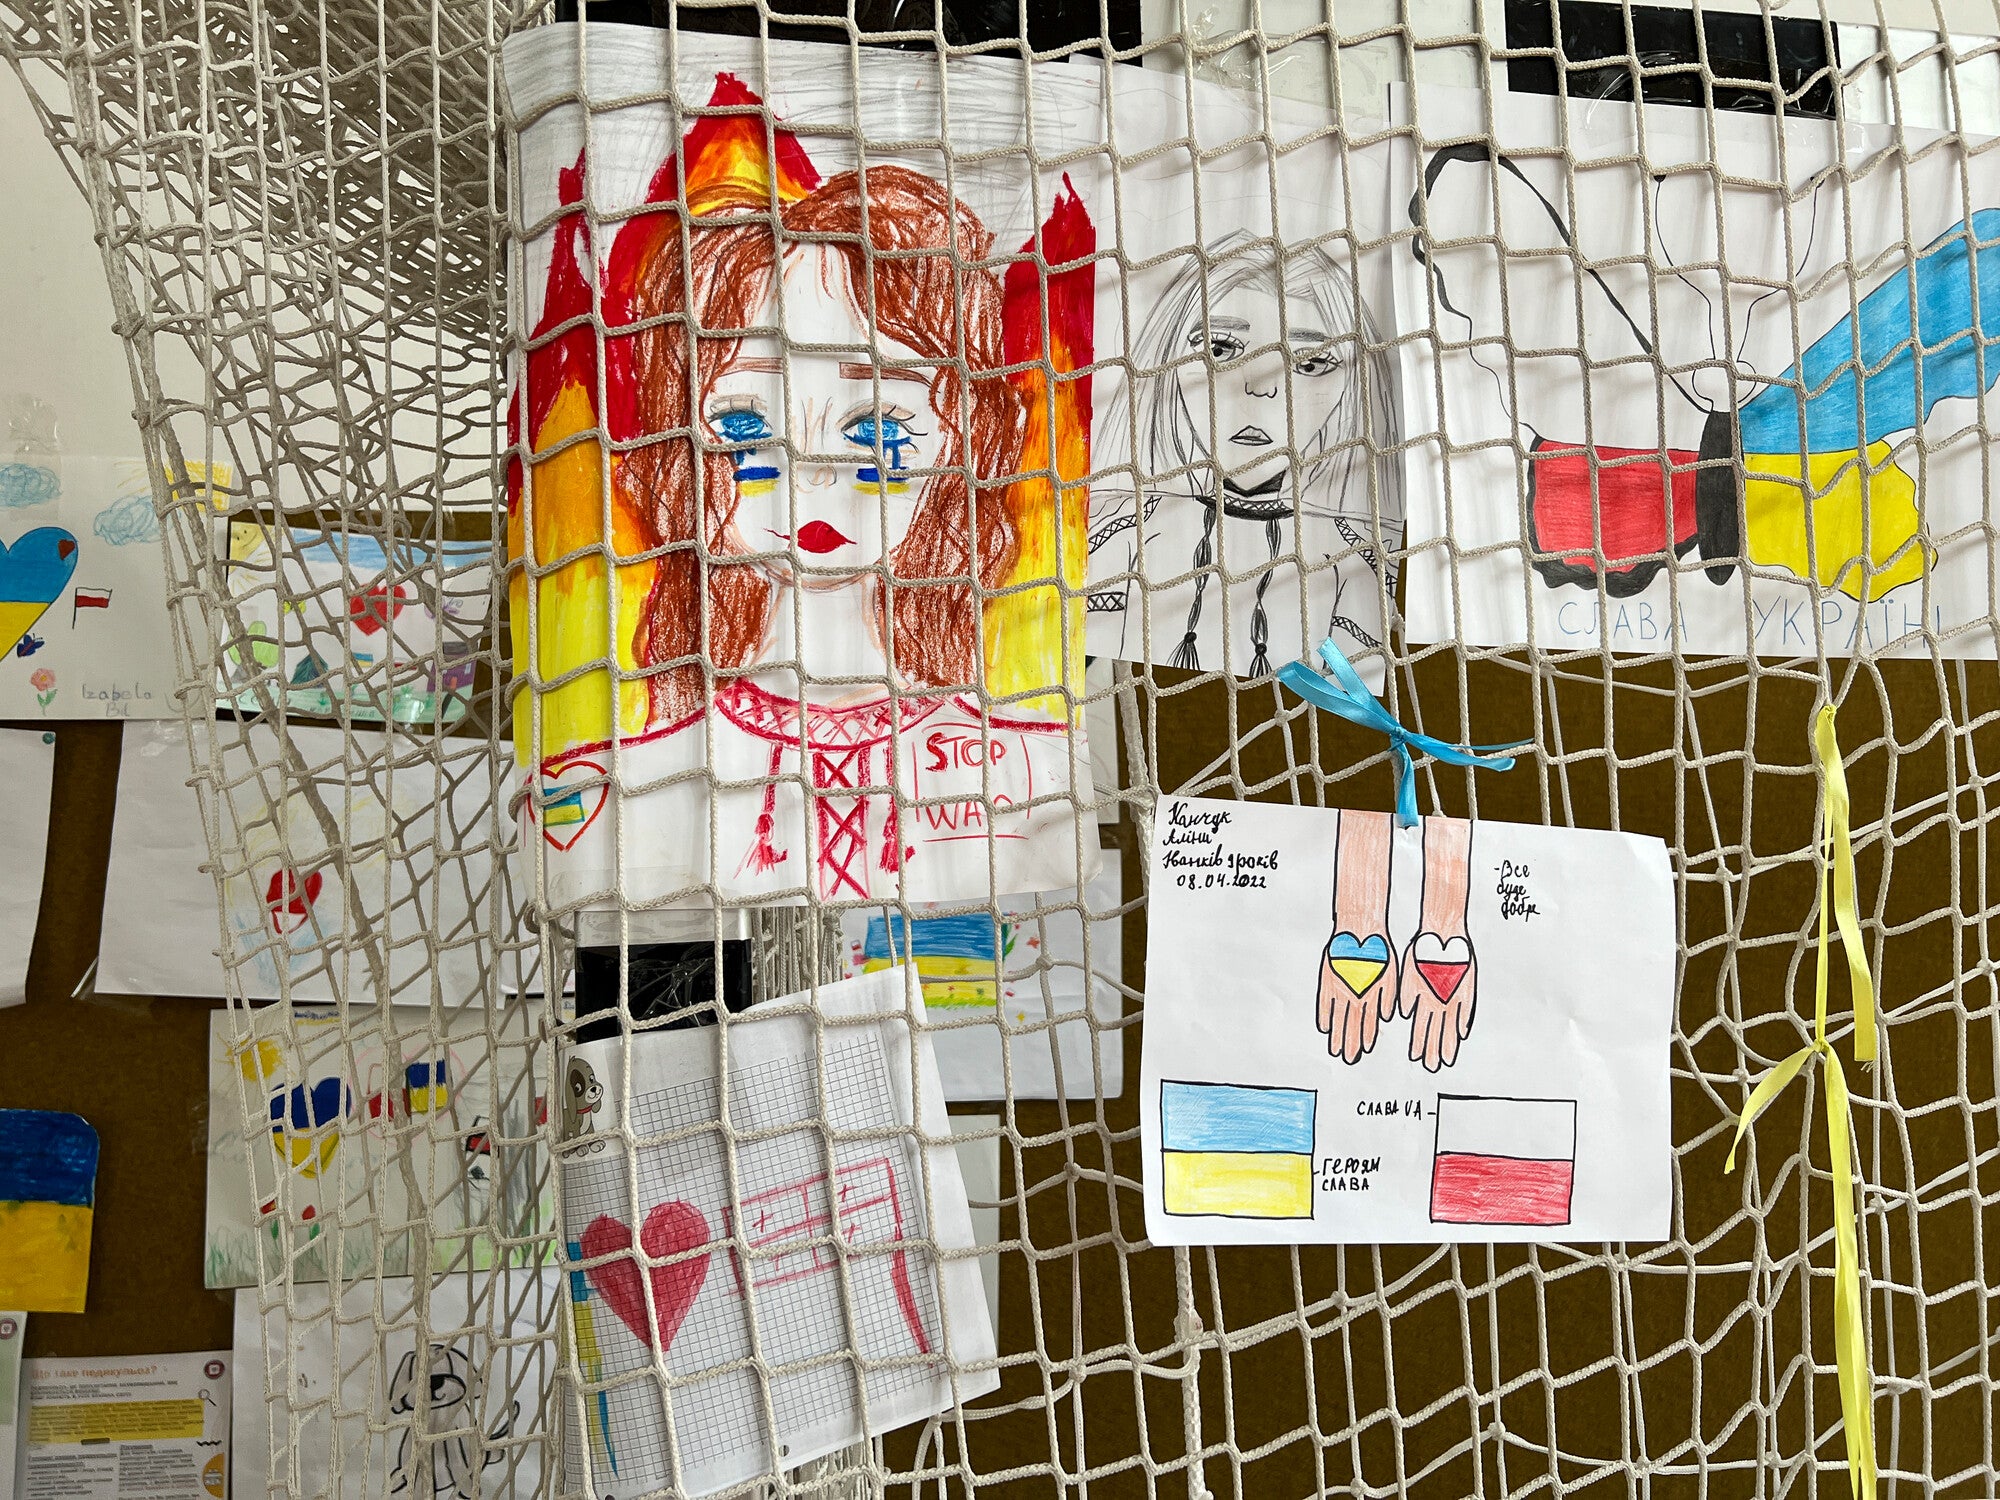 dessins d'enfants réfugiés ukrainiens qui ont été exposés de manière informelle dans une station d'art et d'artisanat dans un gymnase d'école reconverti